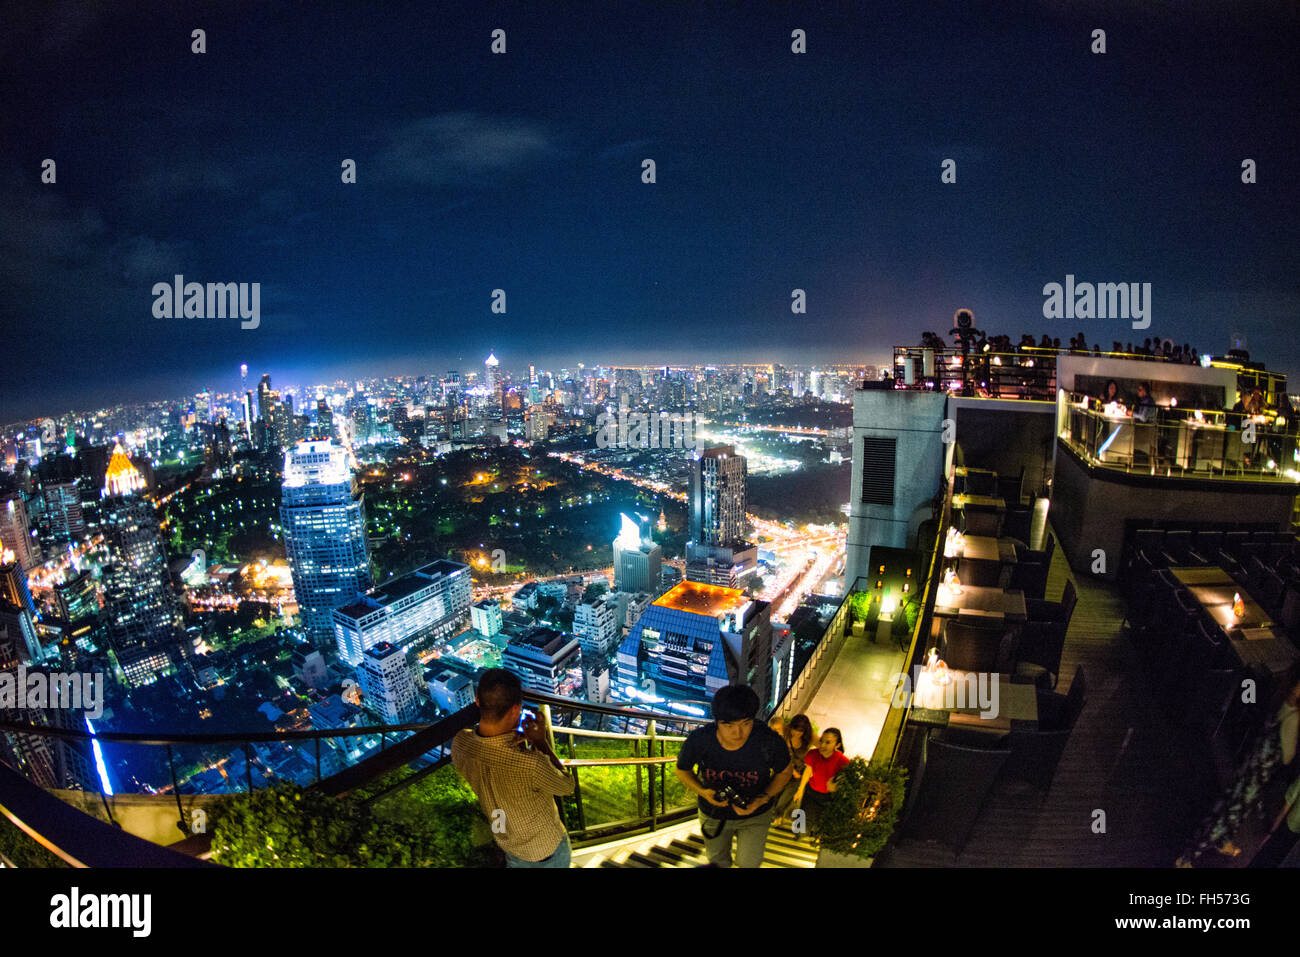 BANGKOK, THAÏLANDE - une vue sur les lumières sur la ville de Bangkok de nuit depuis le restaurant Le Vertigo sur le dessus de la Banyan Tree Hotel. Banque D'Images